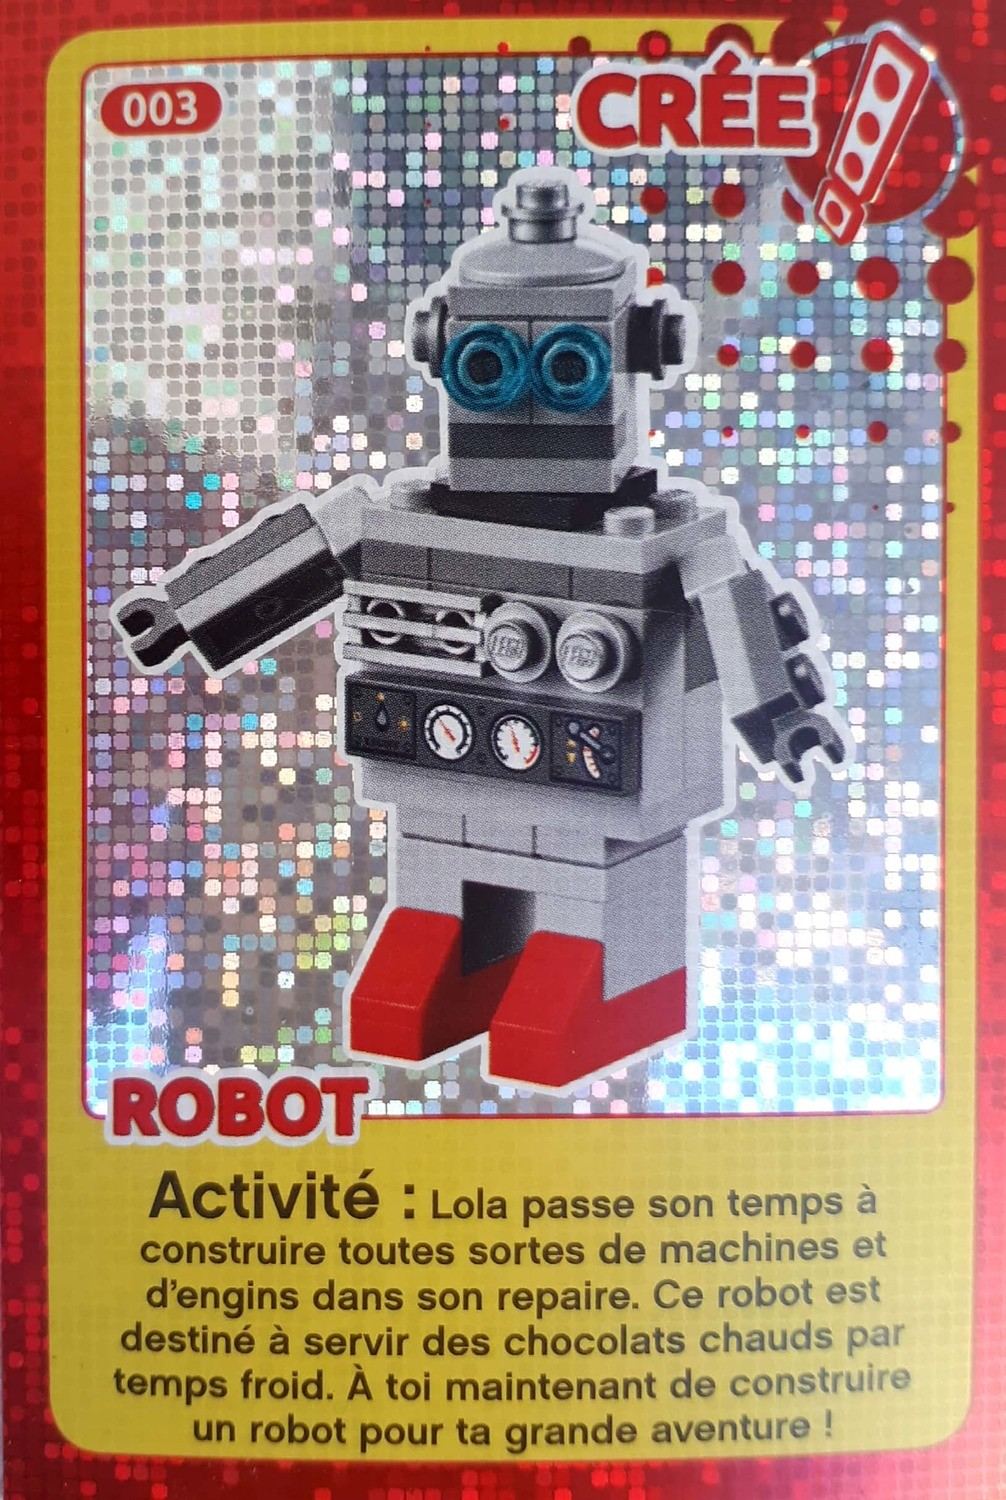 cartes-lego-auchan-cree-ton-monde-robot-003.jpg